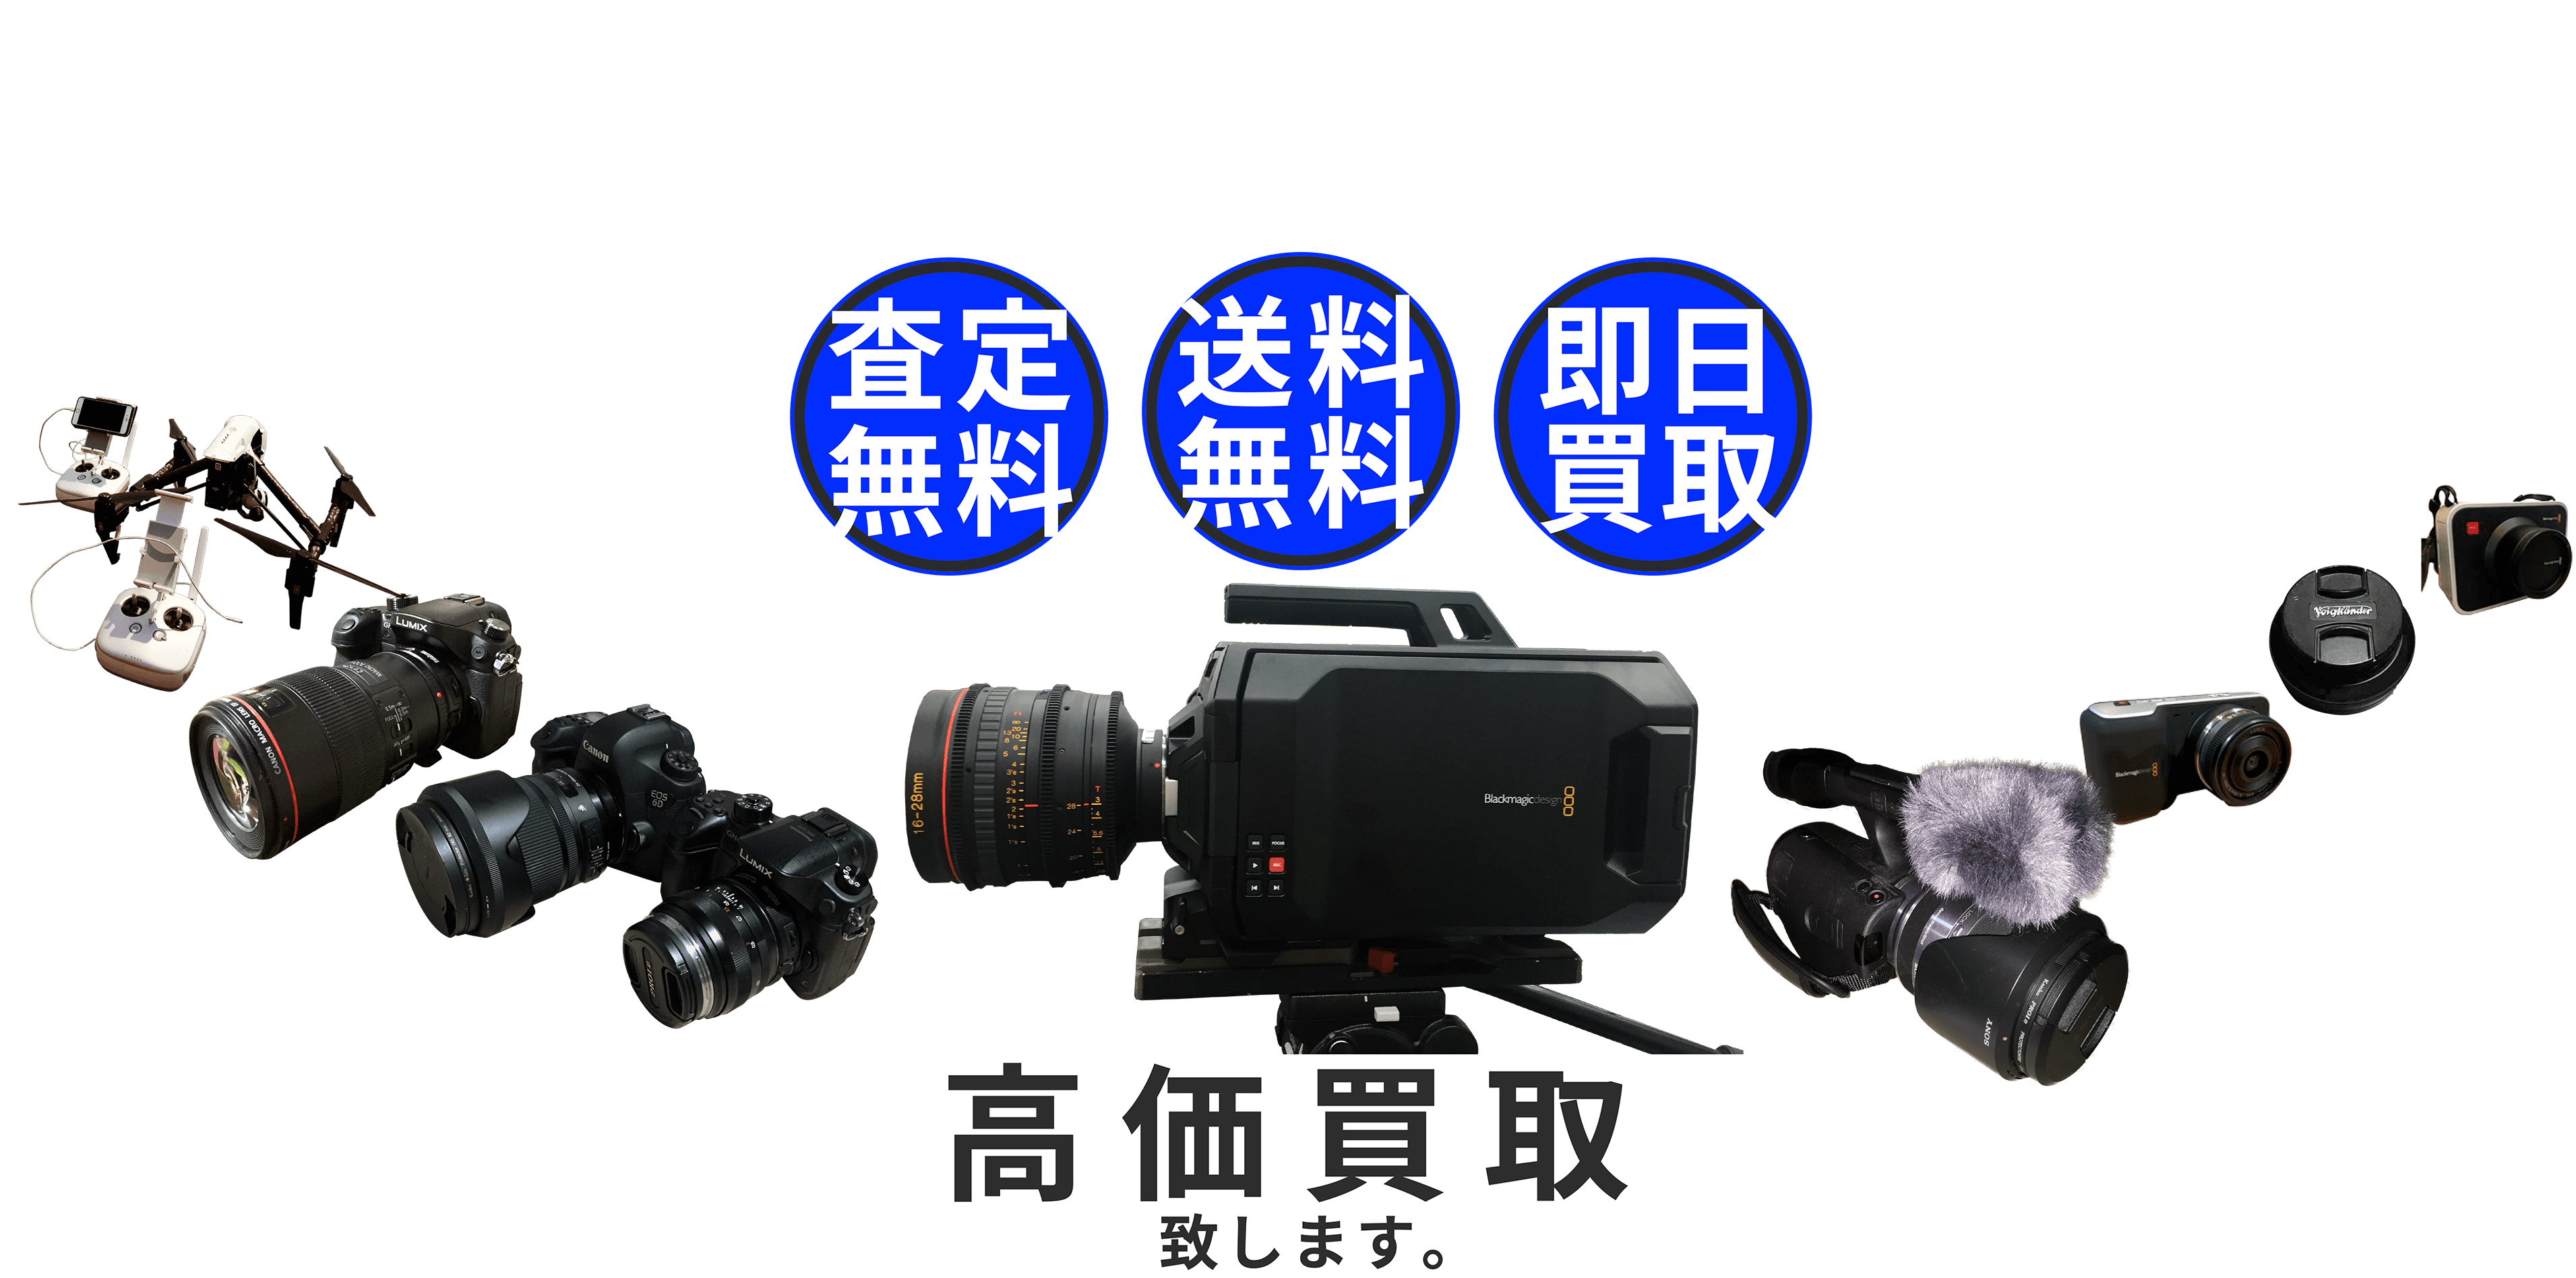 プロ用歓迎 カメラ・映像撮影機材高価買取致します。査定無料 送料無料 即日買取